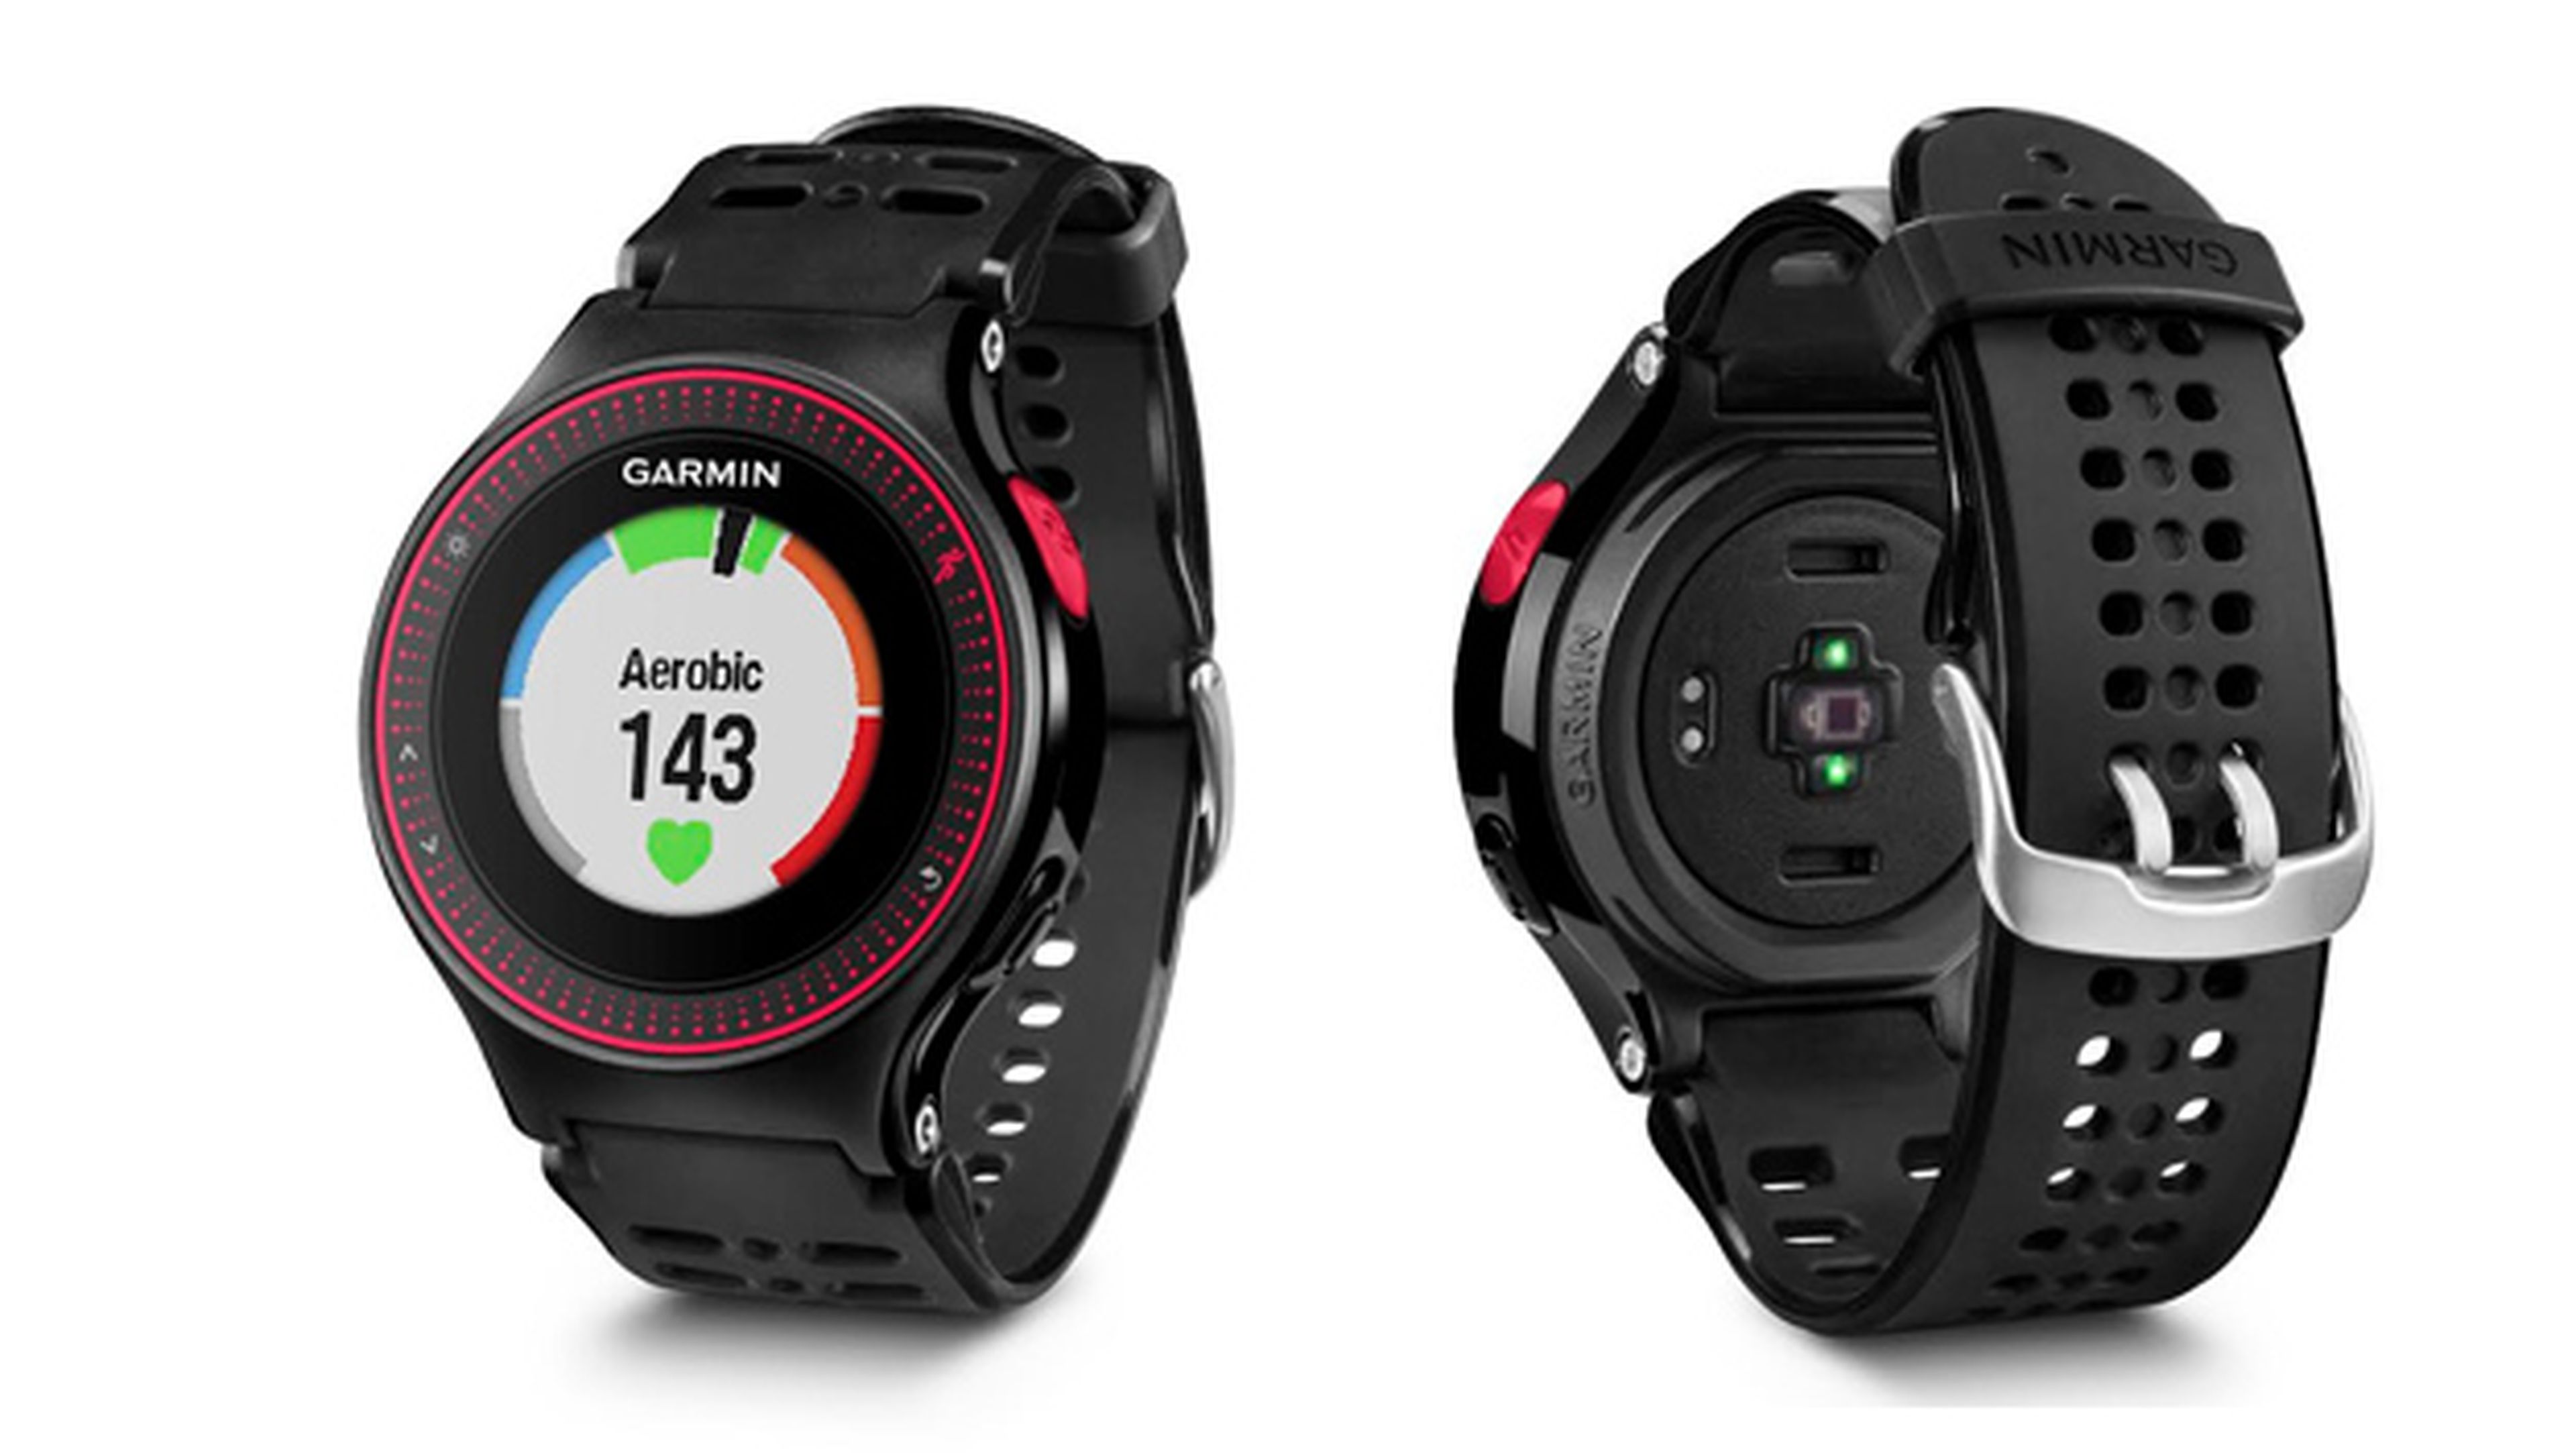 Garmin Forerunner 225 smartwatch runners